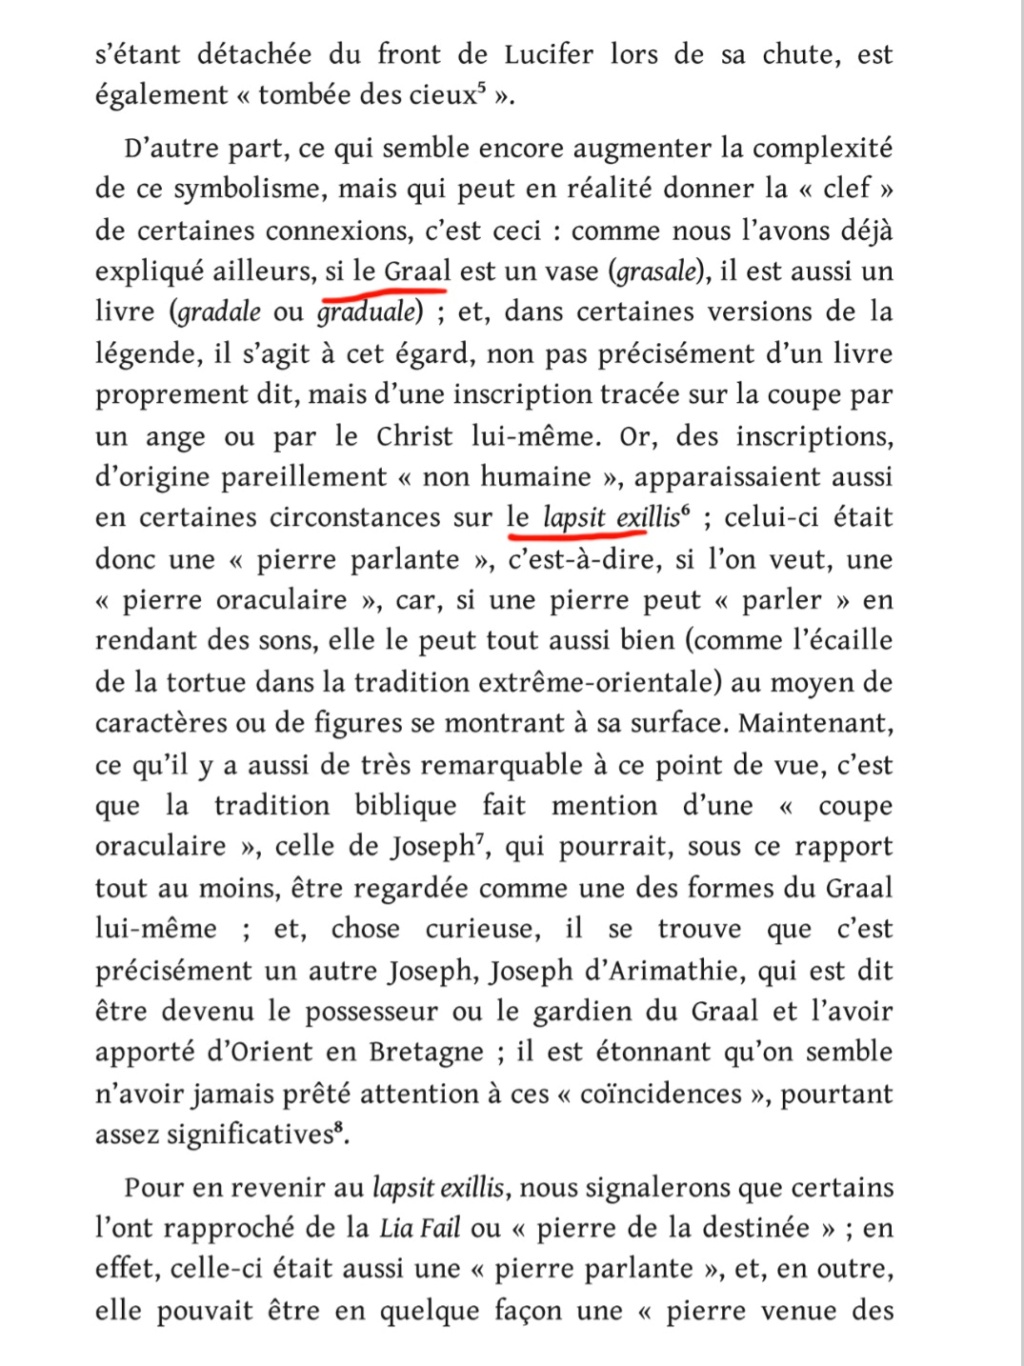 La franc-maçonnerie, la Gnose et le gnosticisme.  - Page 5 Scree536